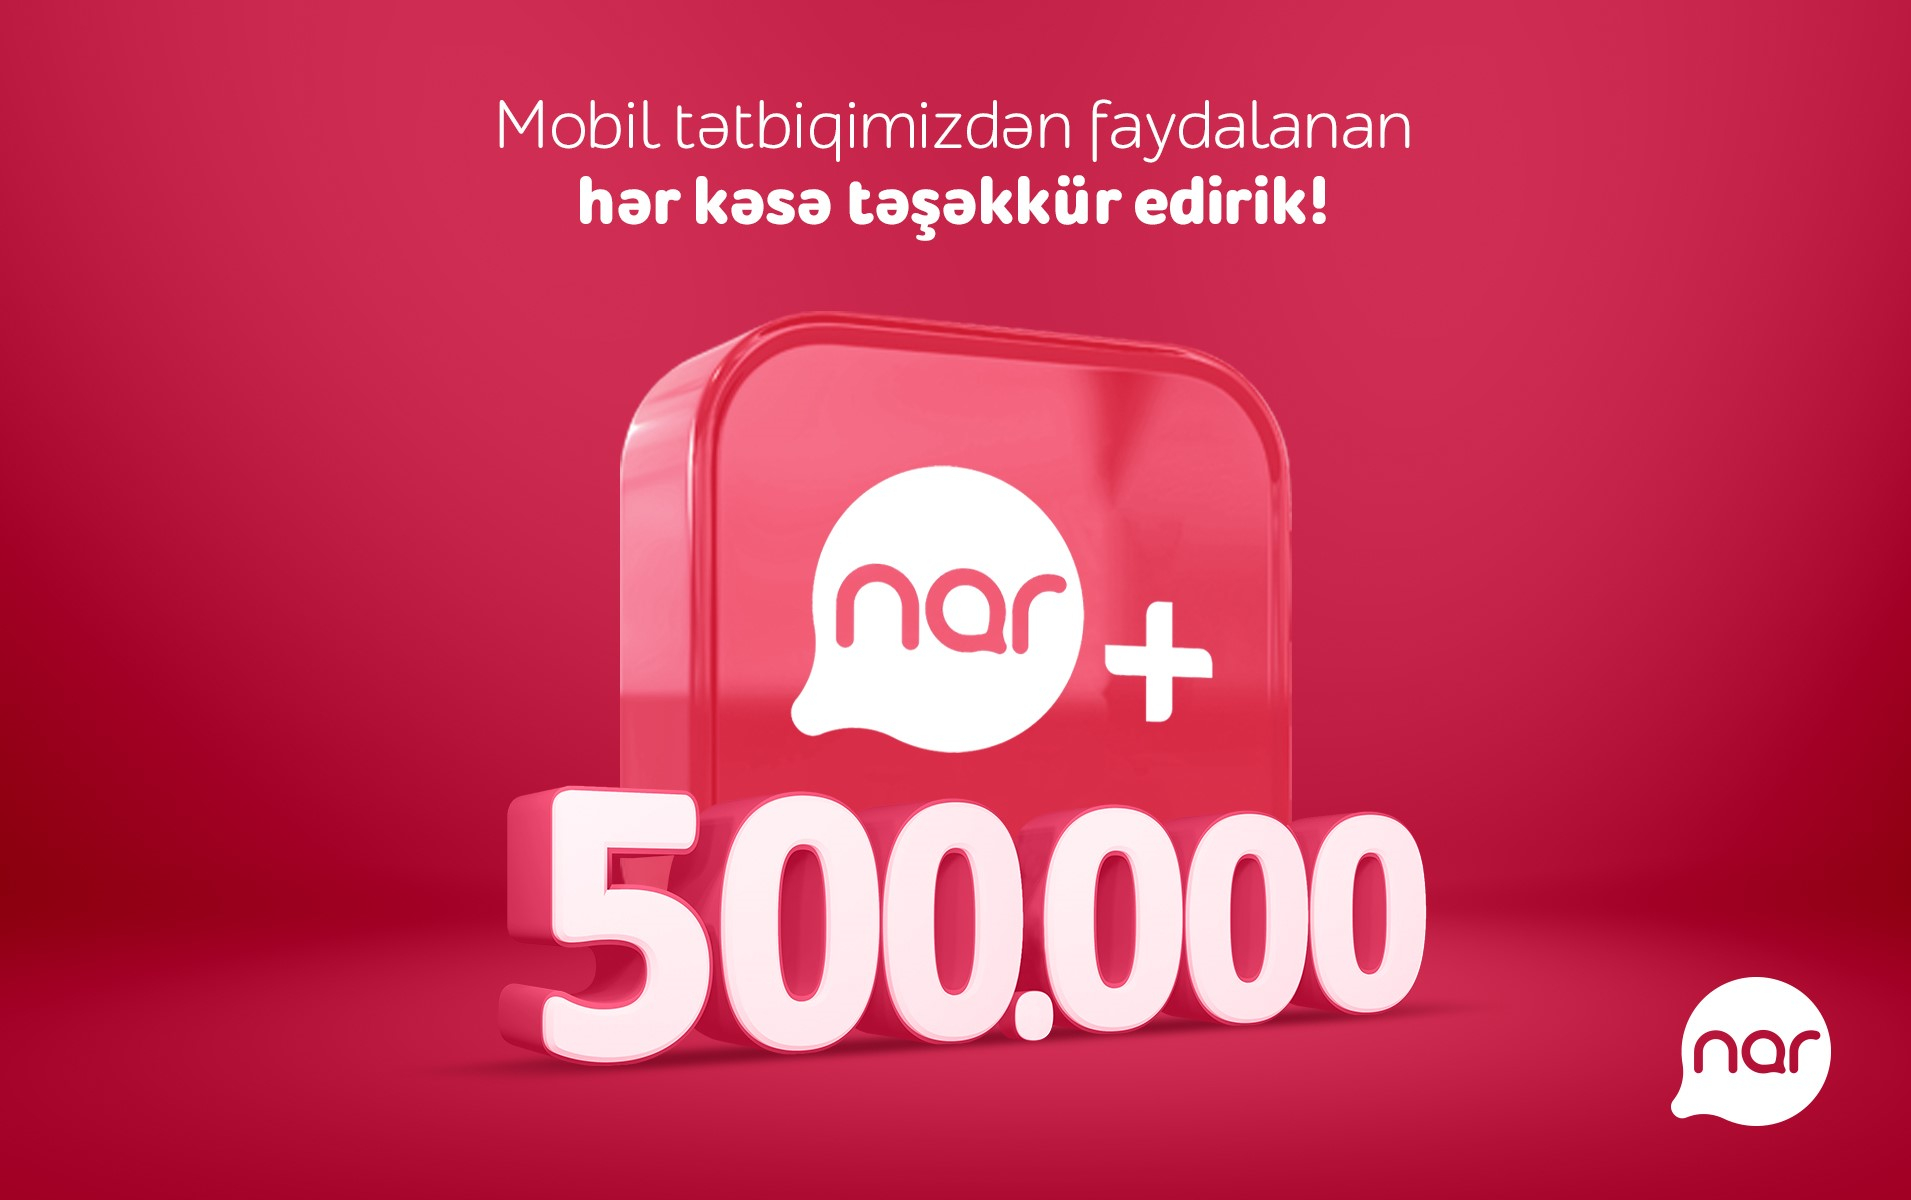 Число загрузок приложения "Nar+" превысило полмиллиона!